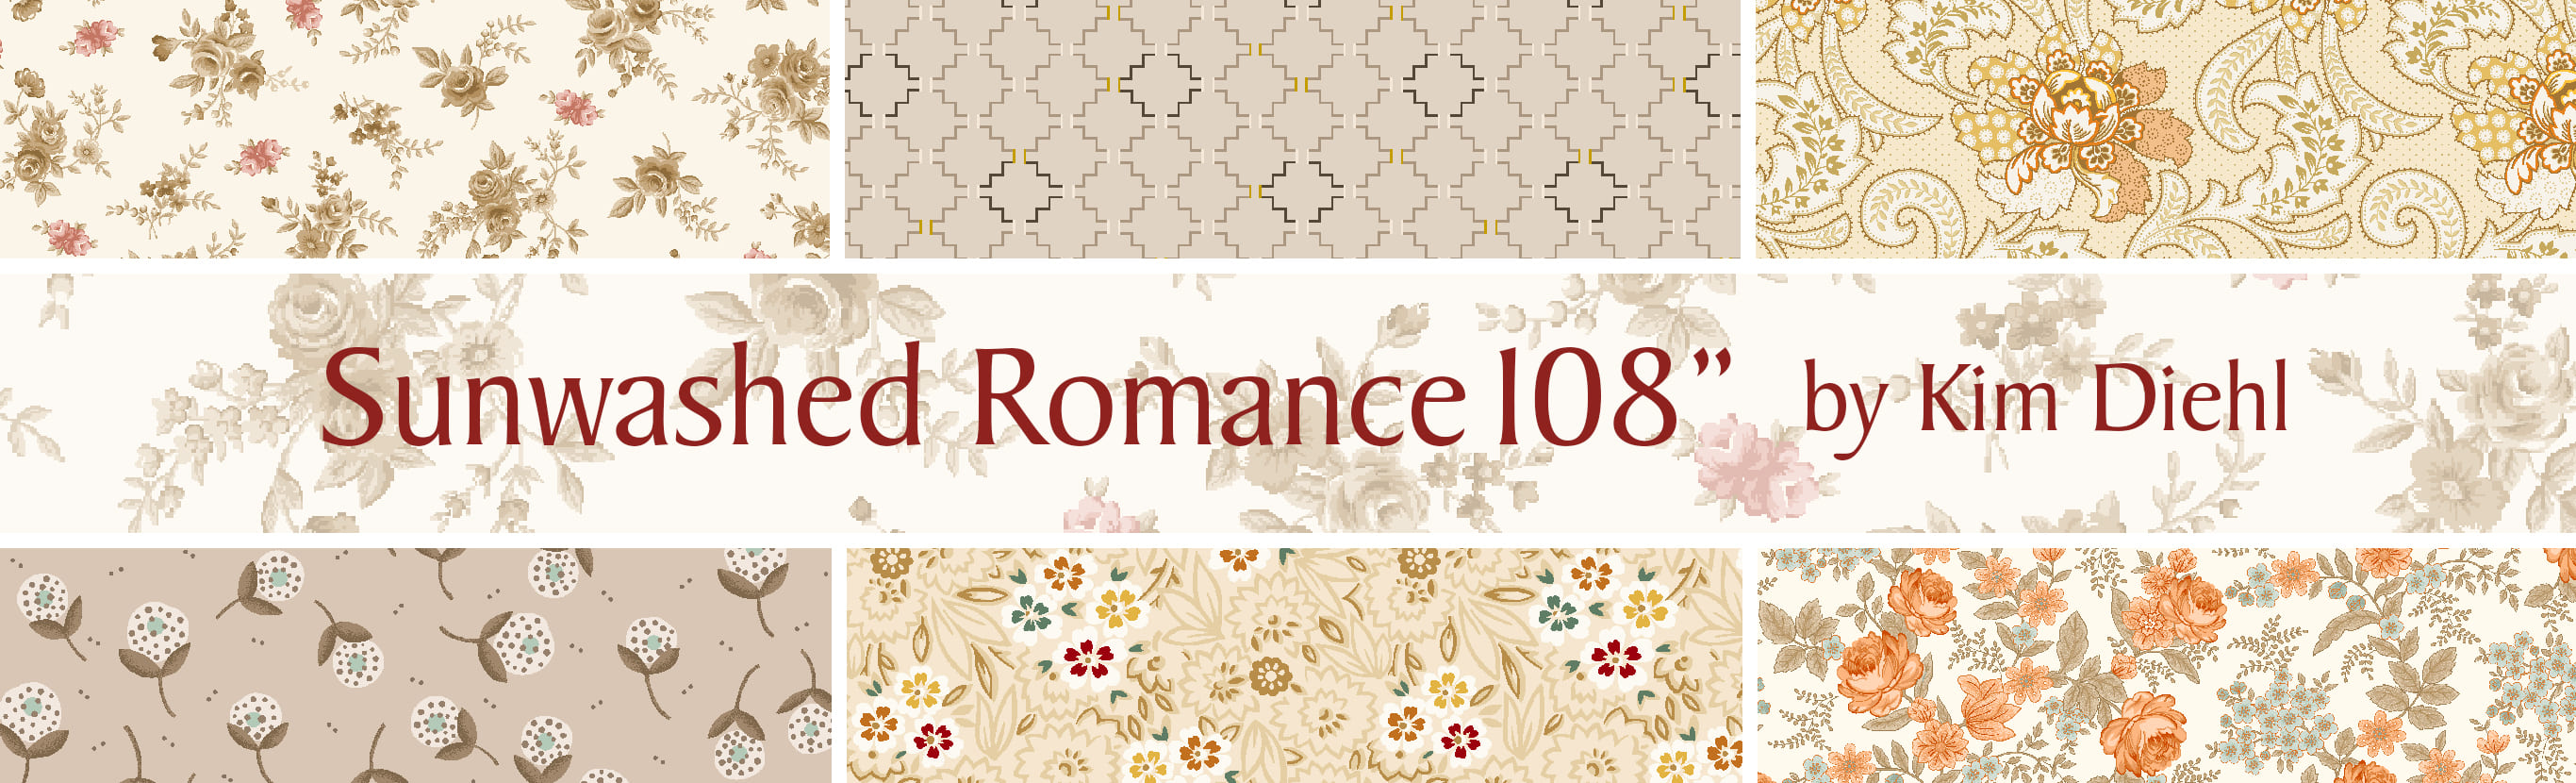 Sunwashed Romance 108